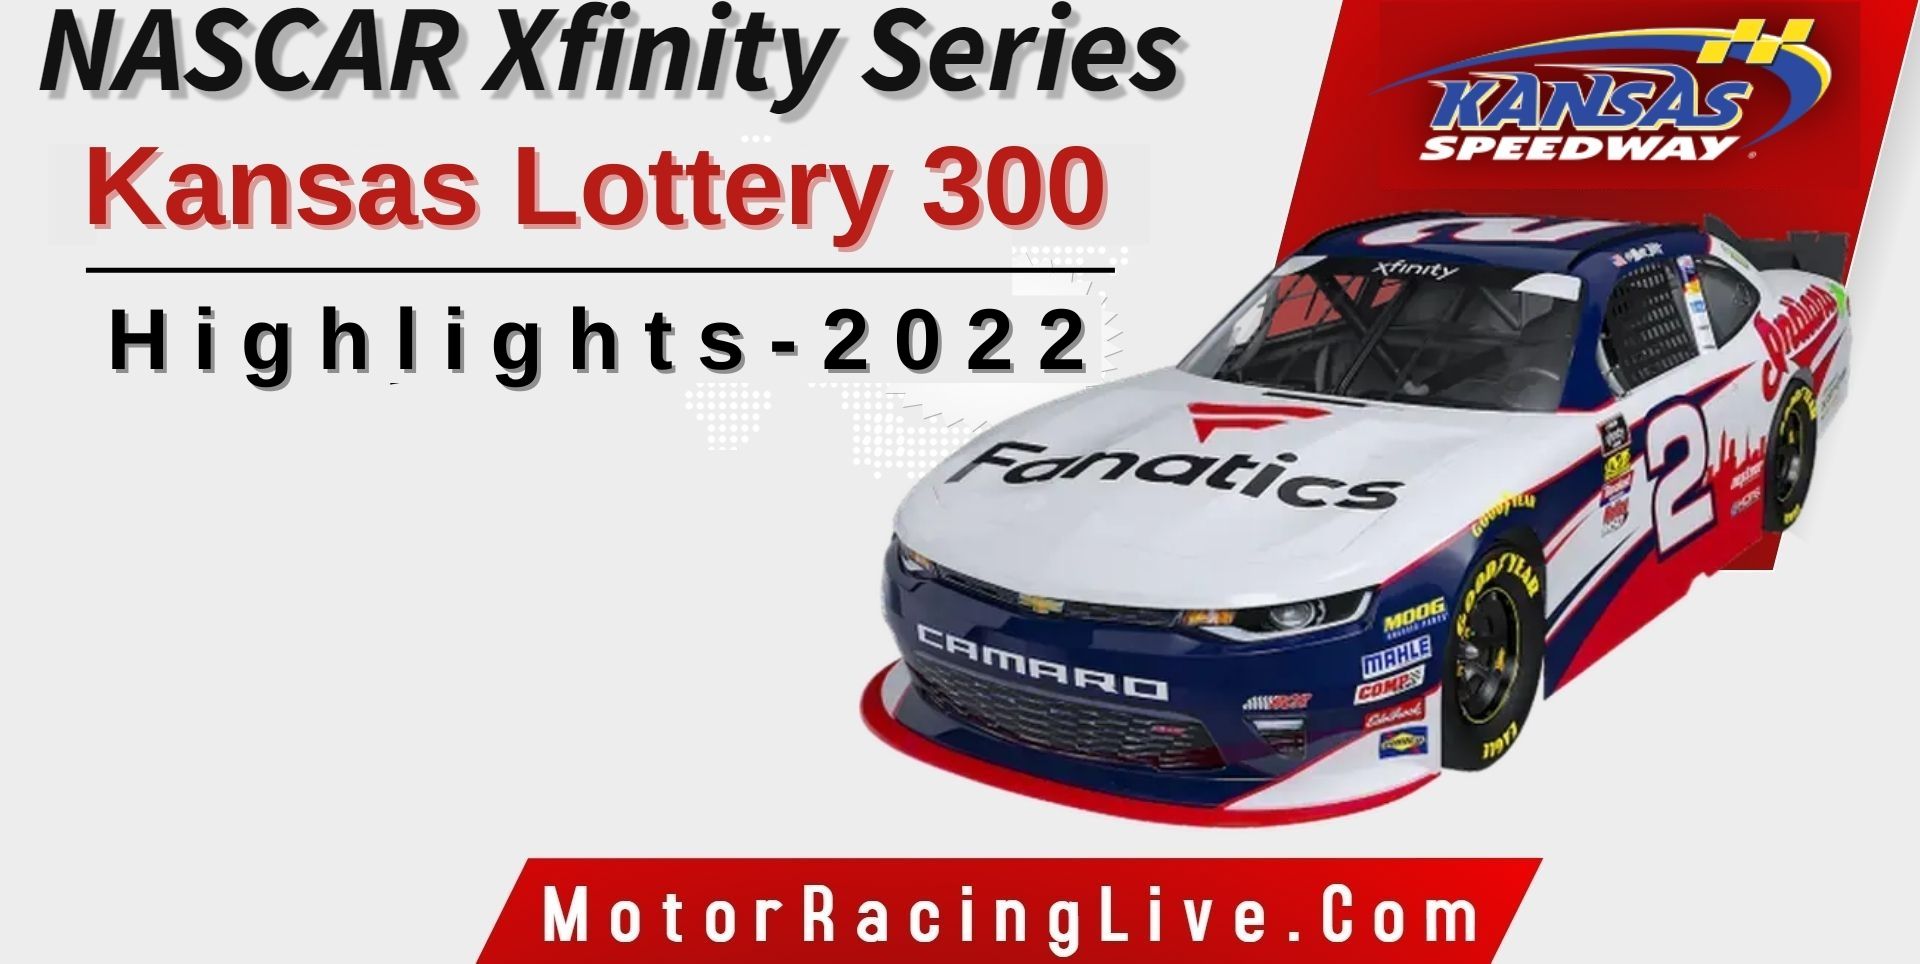 Kansas Lottery 300 Highlights 2022 NASCAR Xfinity